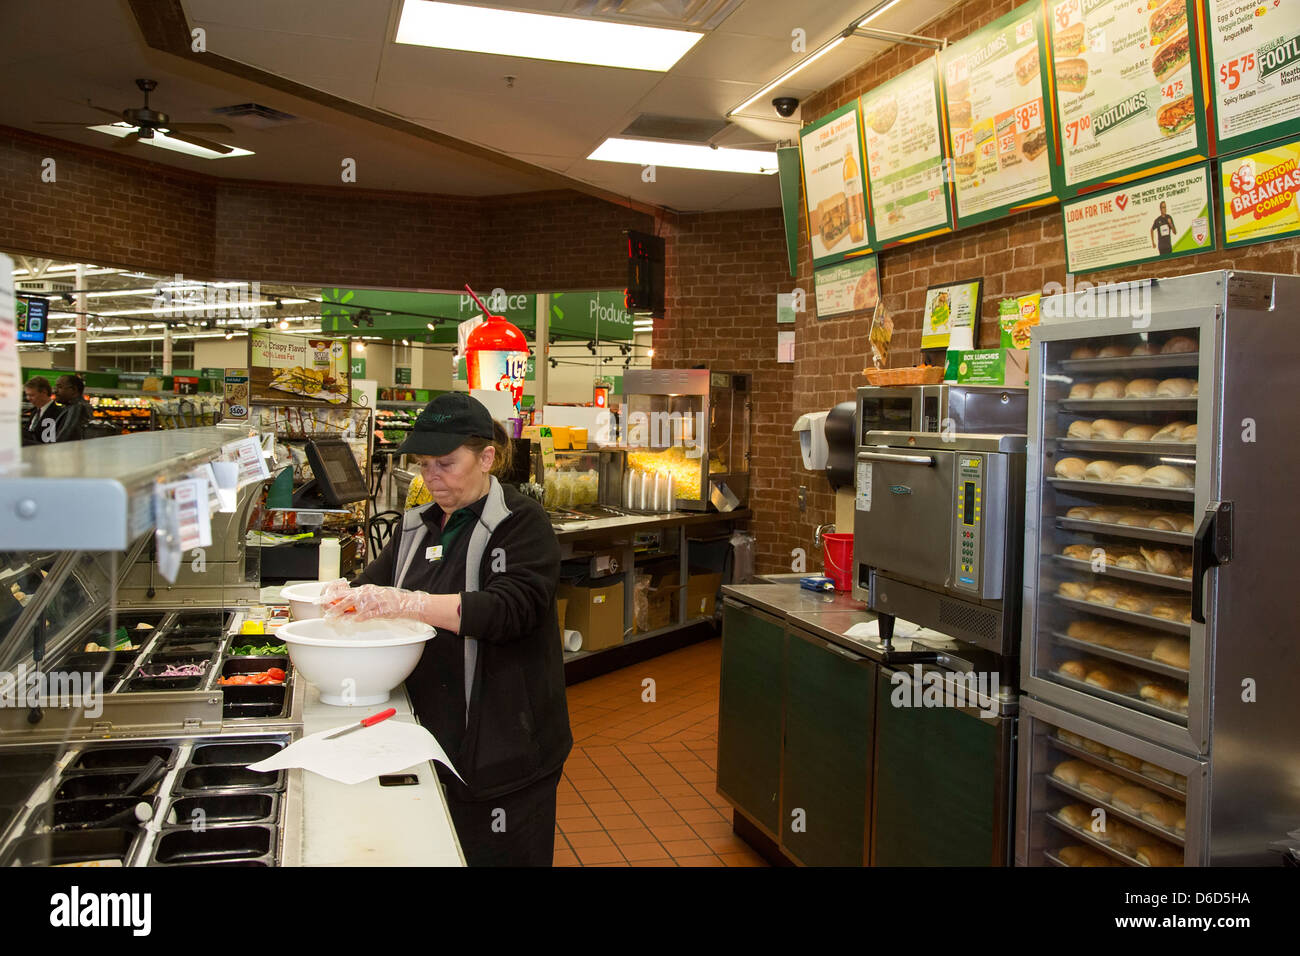 Sterling Heights, Michigan - Un trabajador prepara la comida en un metro de franquicia de comida rápida situado en el interior de una tienda Walmart. Foto de stock